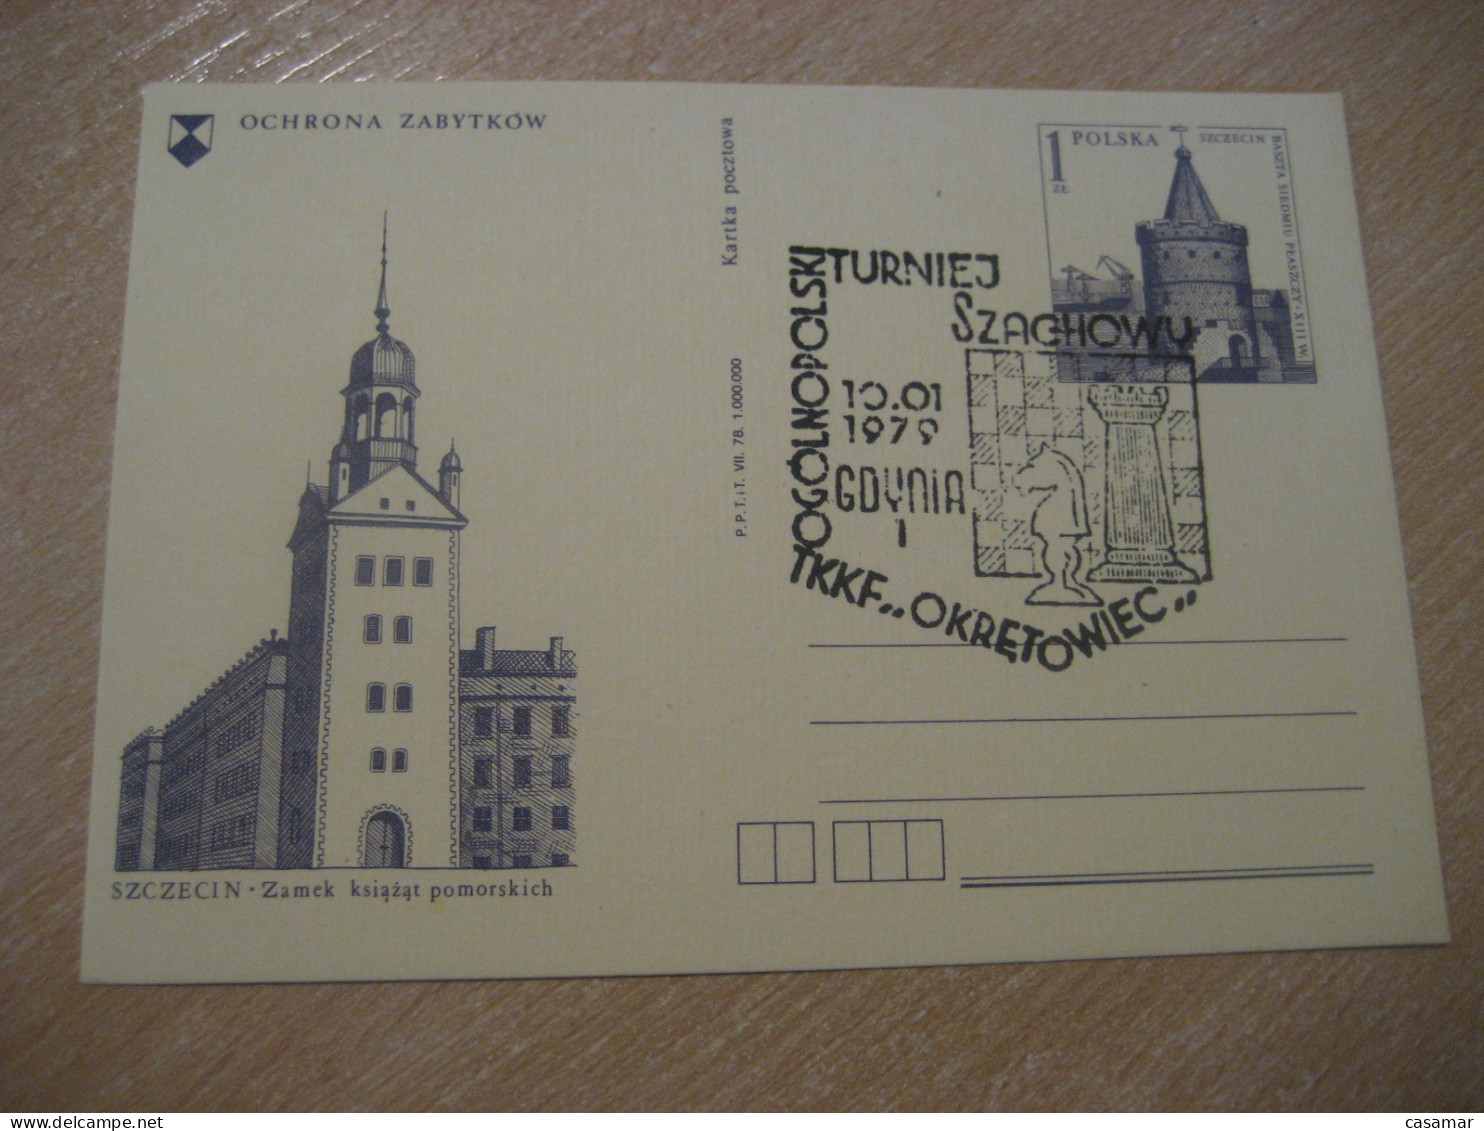 GDYNIA 1979 Chess Echecs Ajedrez Cancel Postal Stationery Card POLAND - Ajedrez